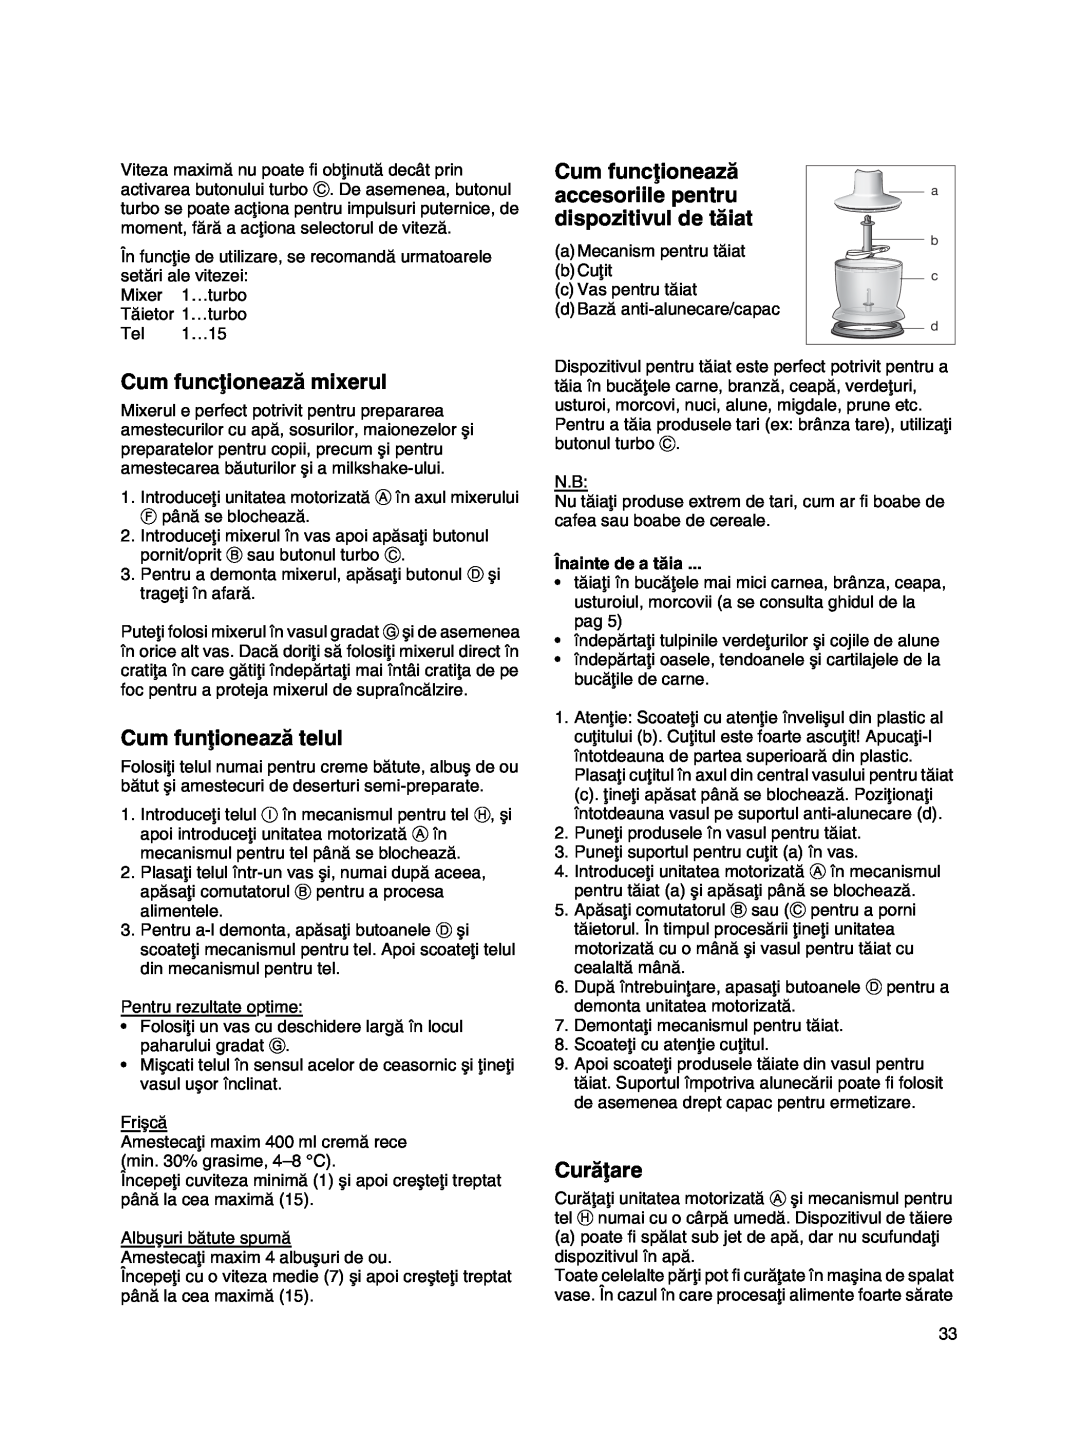 Braun MR 500 manual Cum funcøioneazå mixerul, Cum funøioneazå telul, accesoriile pentru, dispozitivul de tåiat, Curåøare 